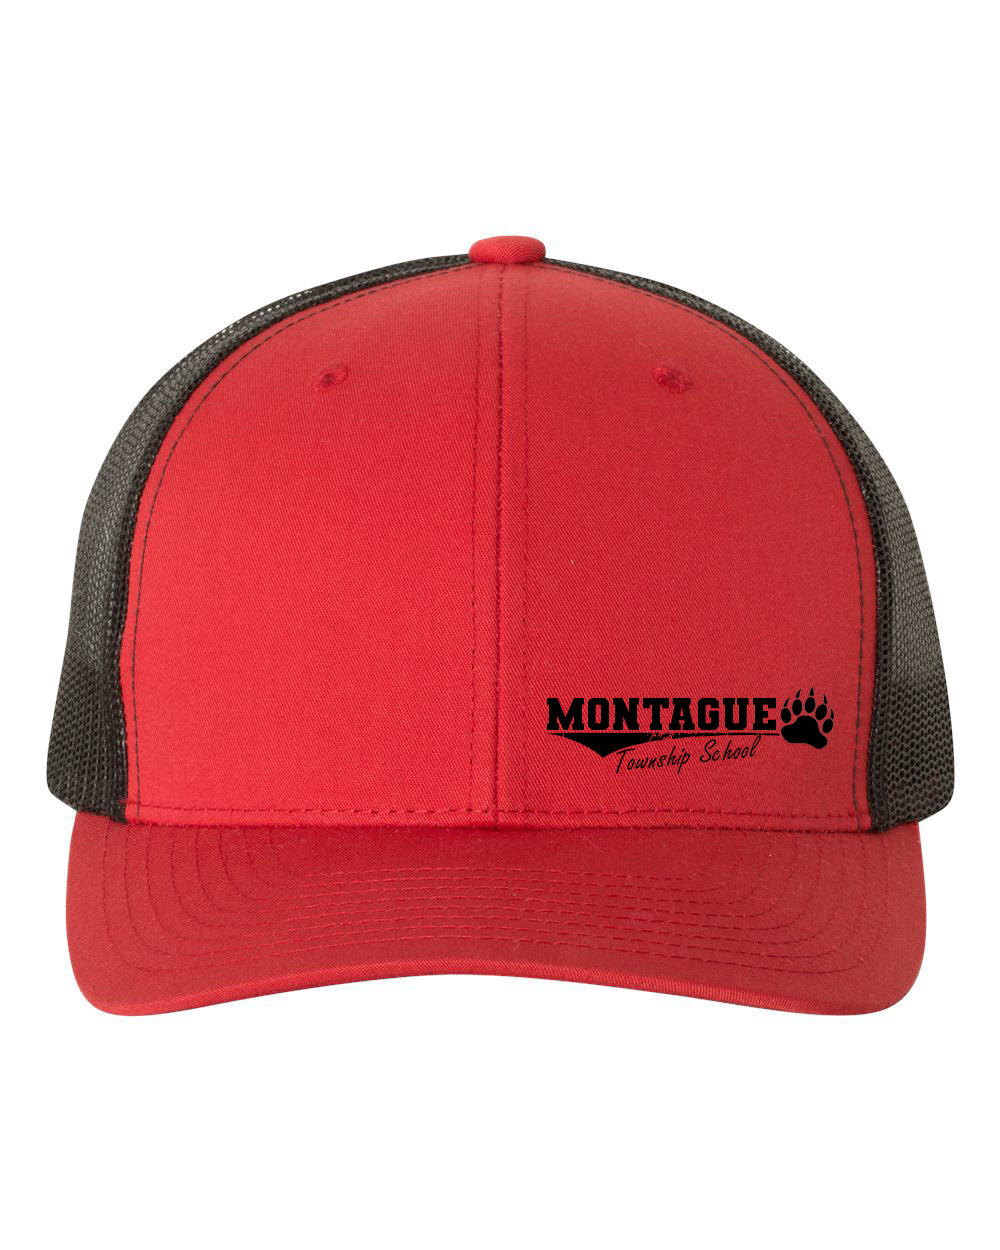 Montague Design 1 Trucker Hat